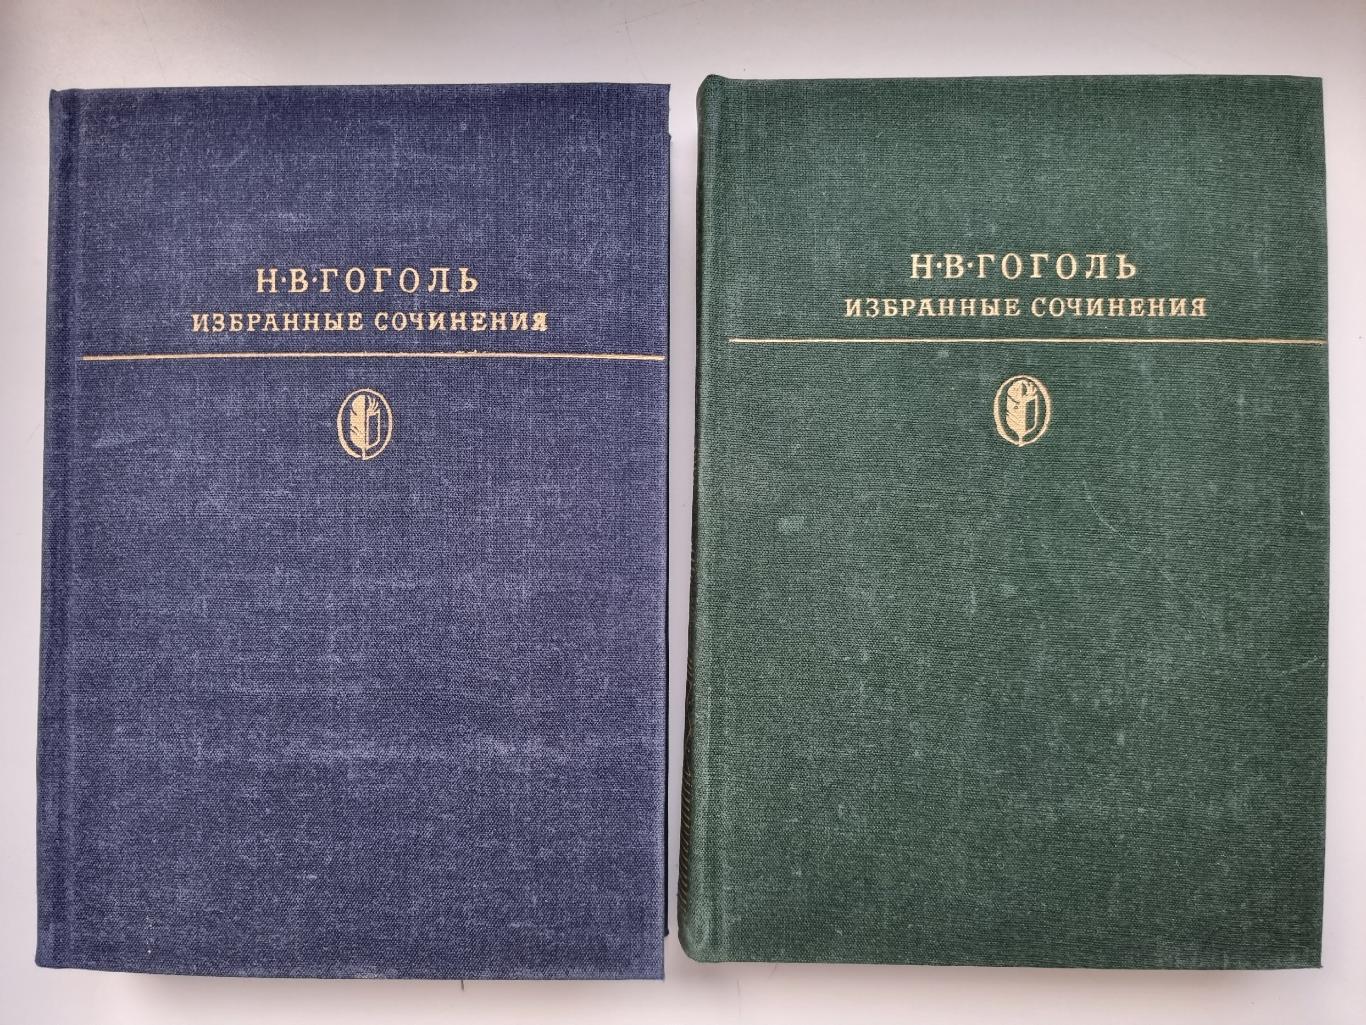 Н.В.Гоголь. Избранные собрания сочинений в 2 томах (читайте описание)